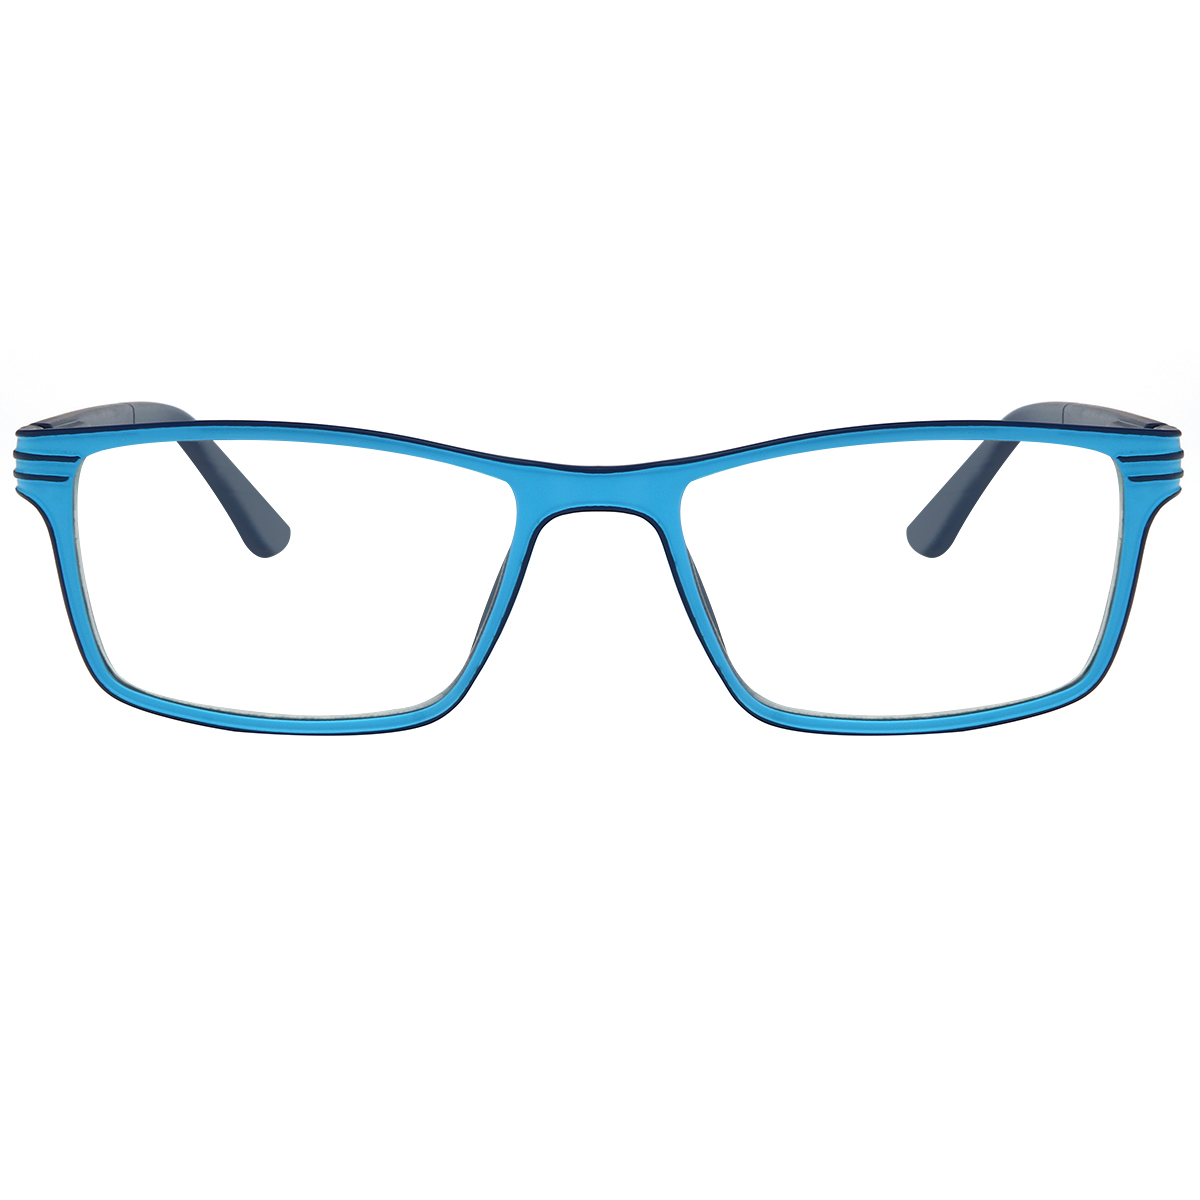 Classic Rectangle Blue  Reading Glasses for Women & Men